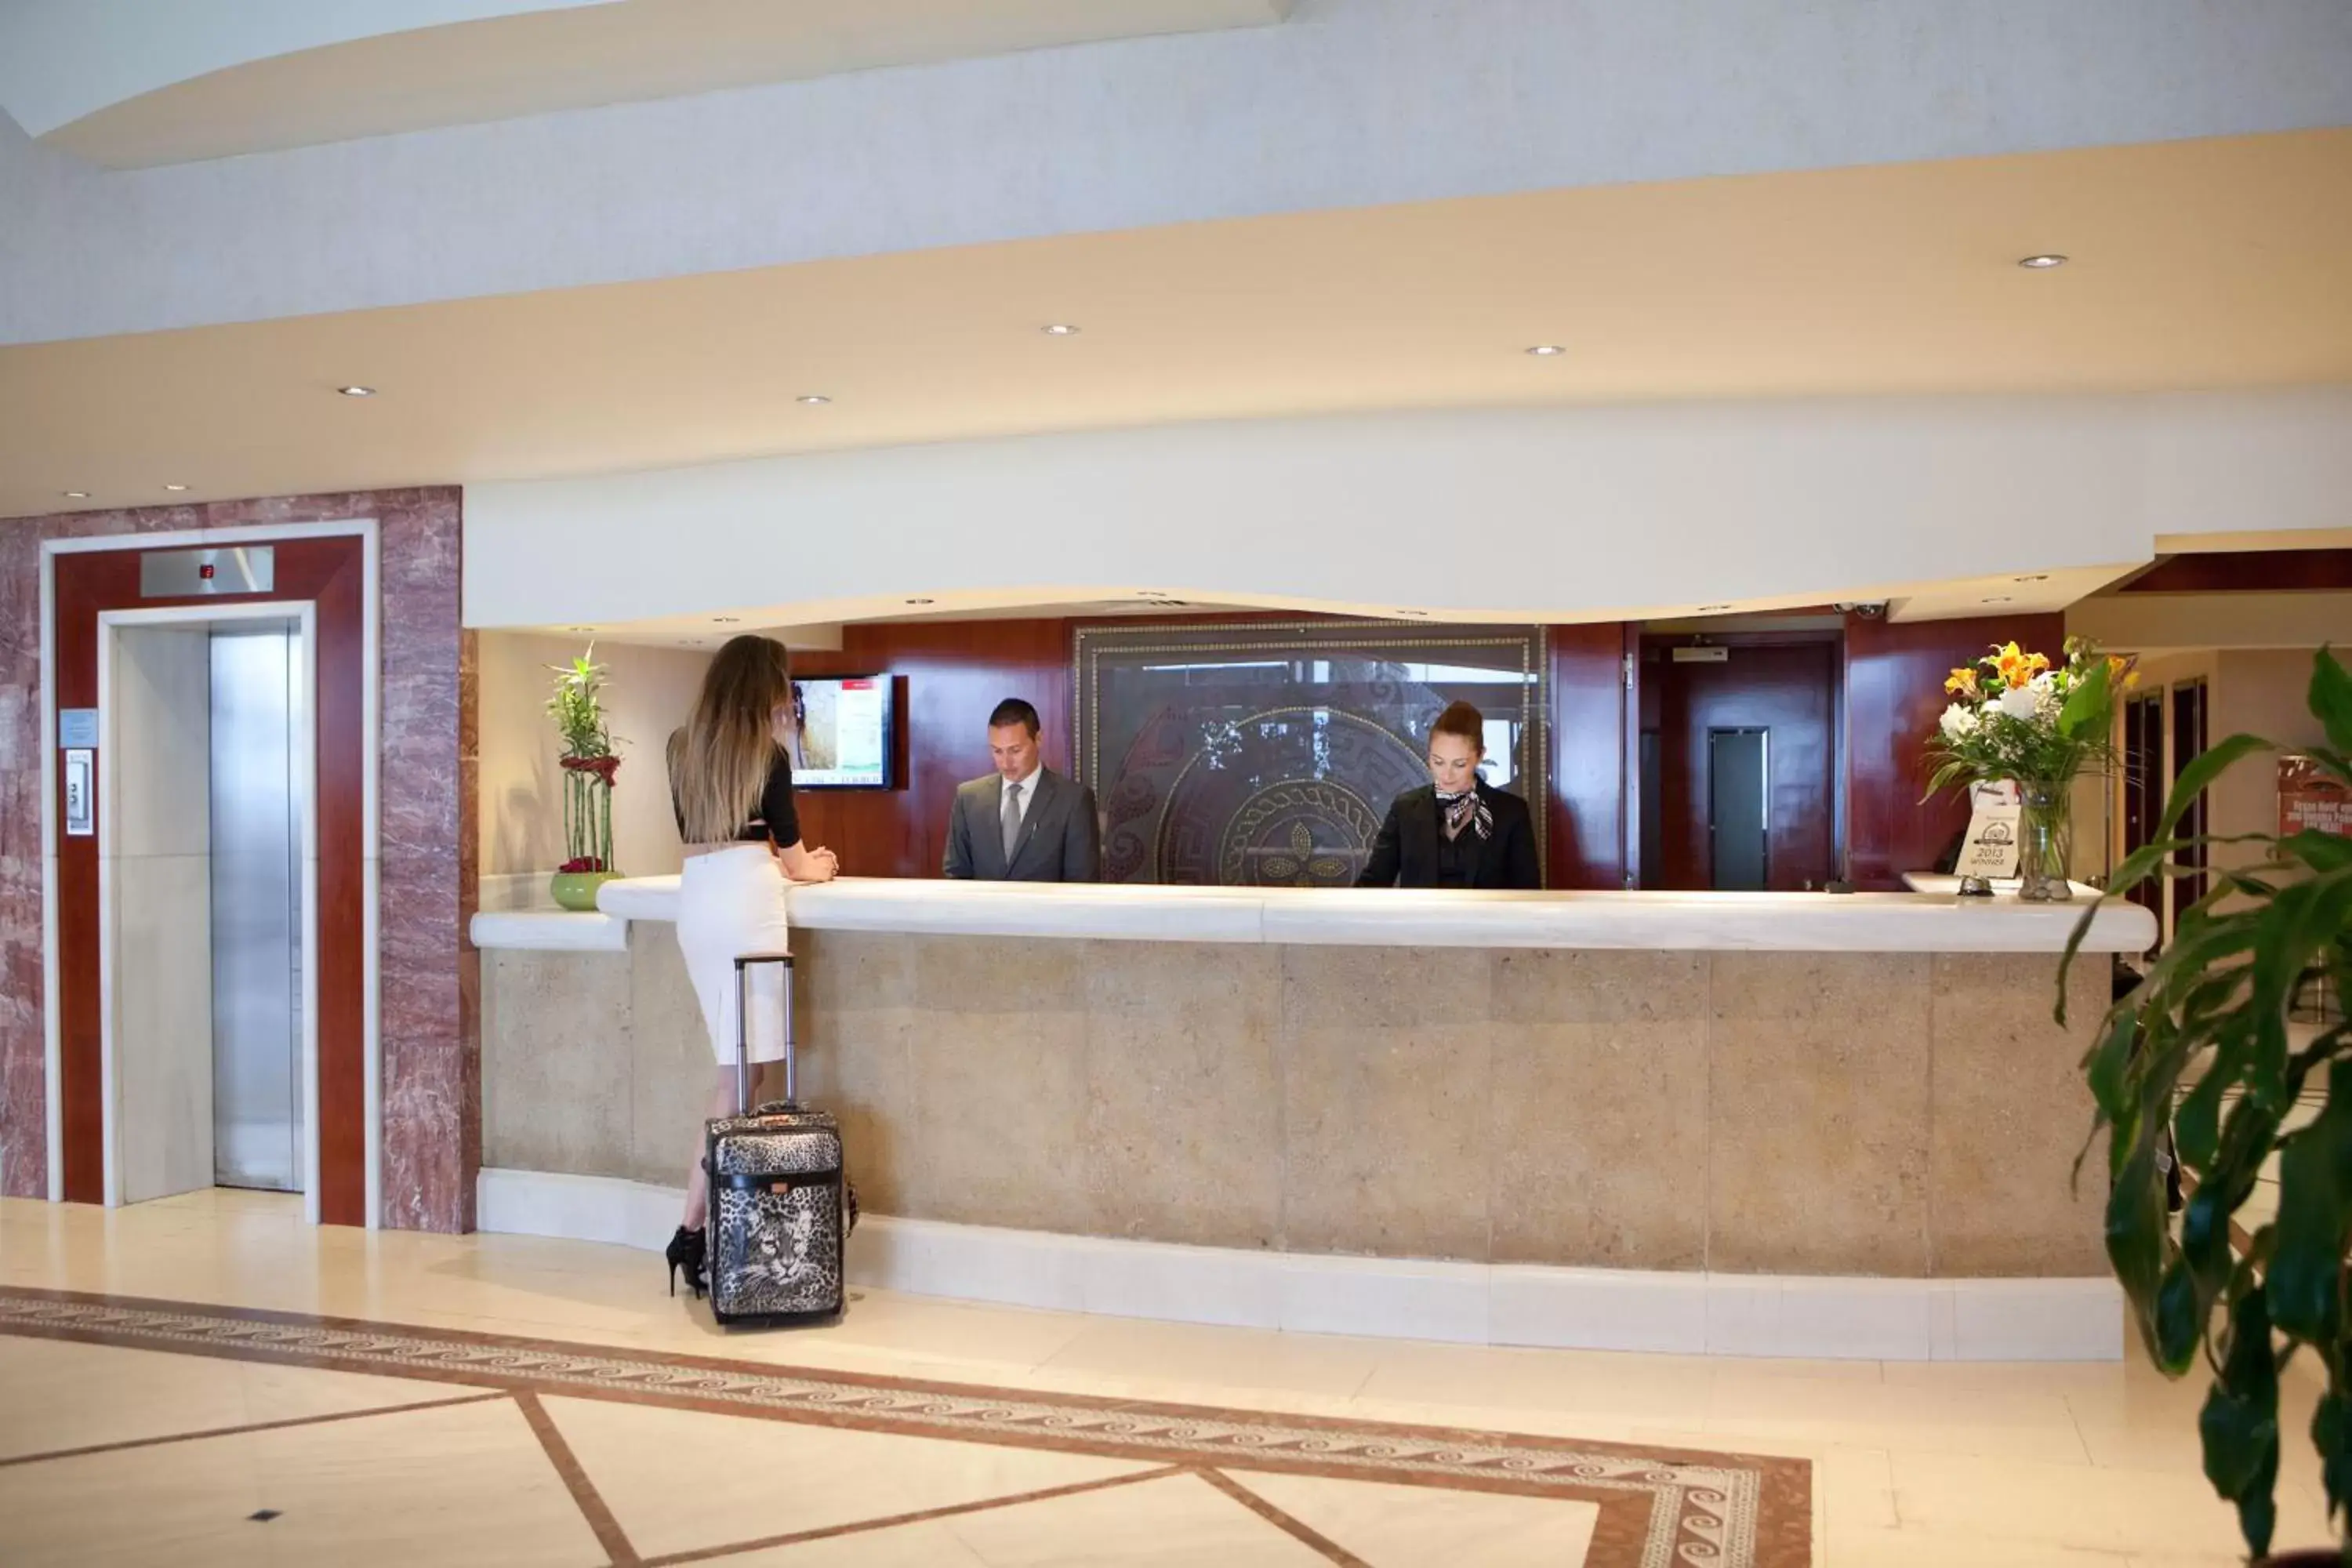 Lobby or reception, Lobby/Reception in Mediterranean Hotel